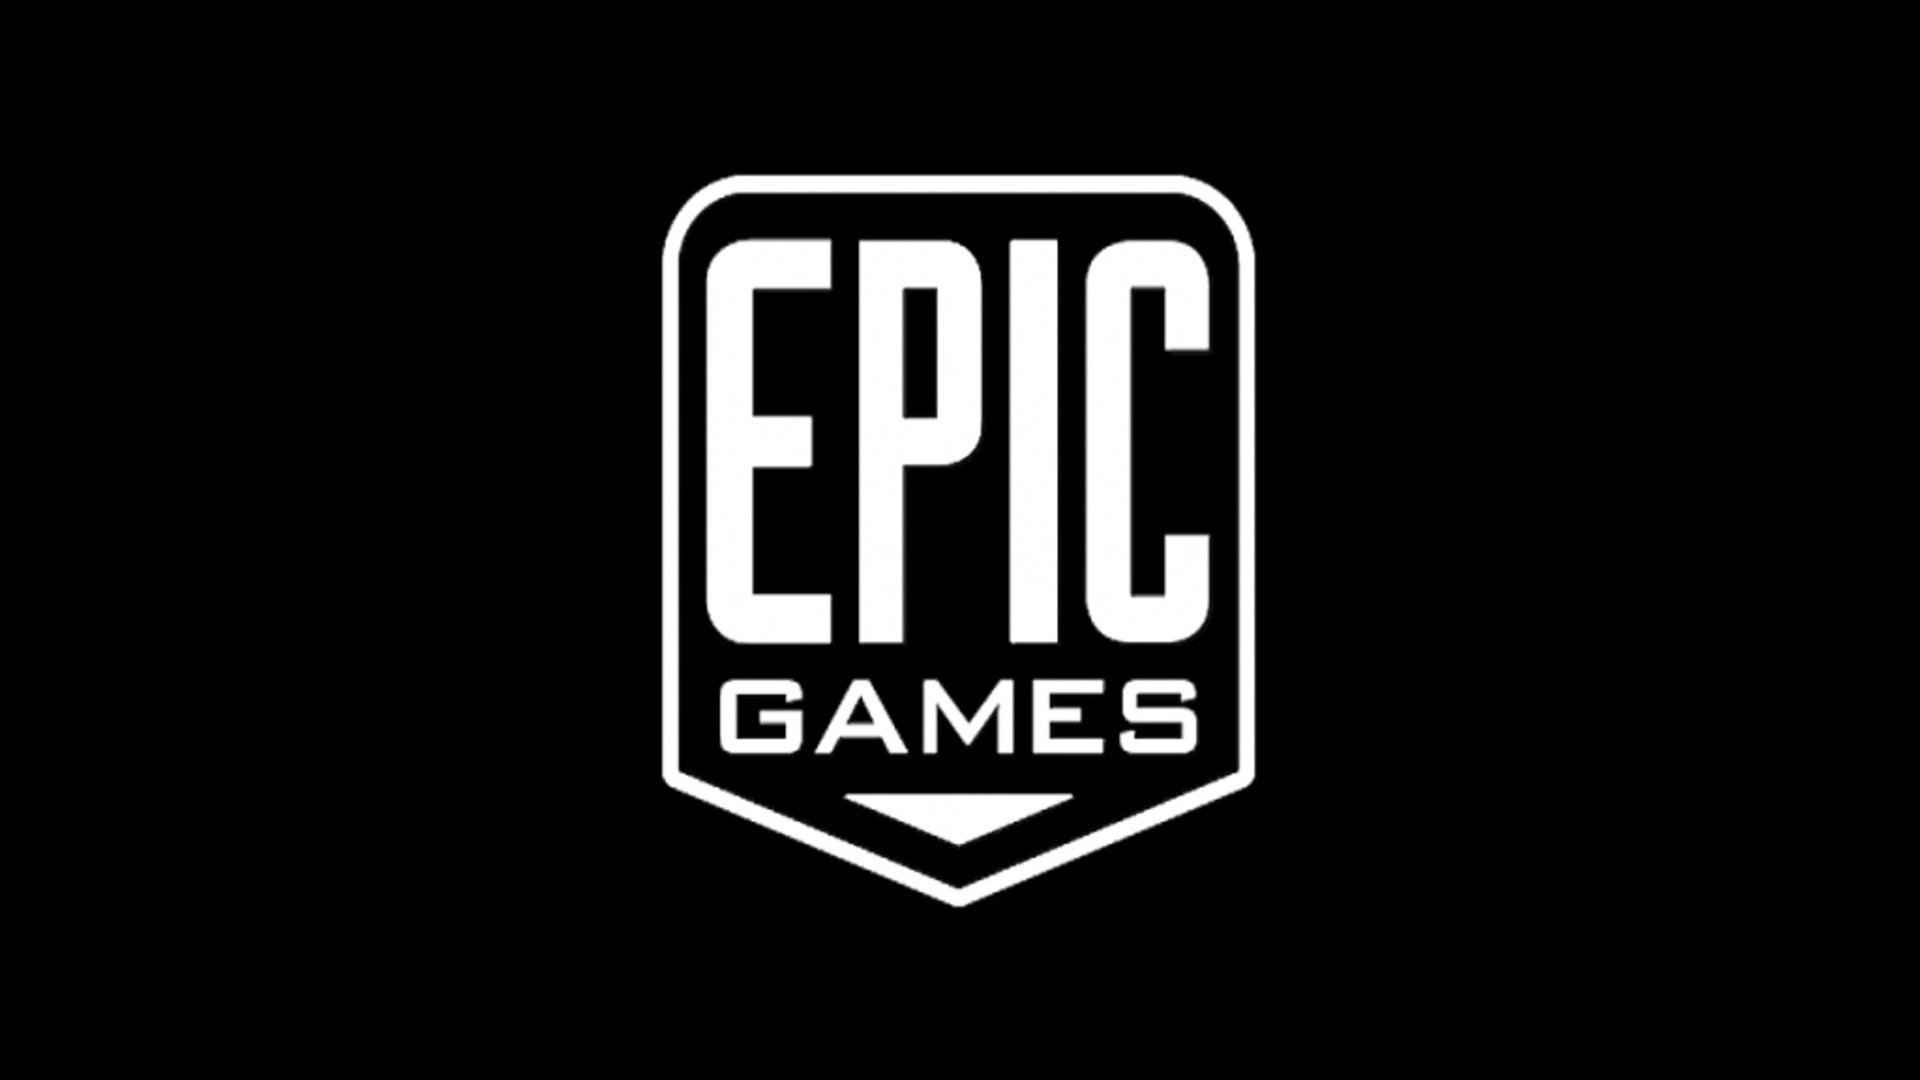 

Sonneries gratuites de Epic games
